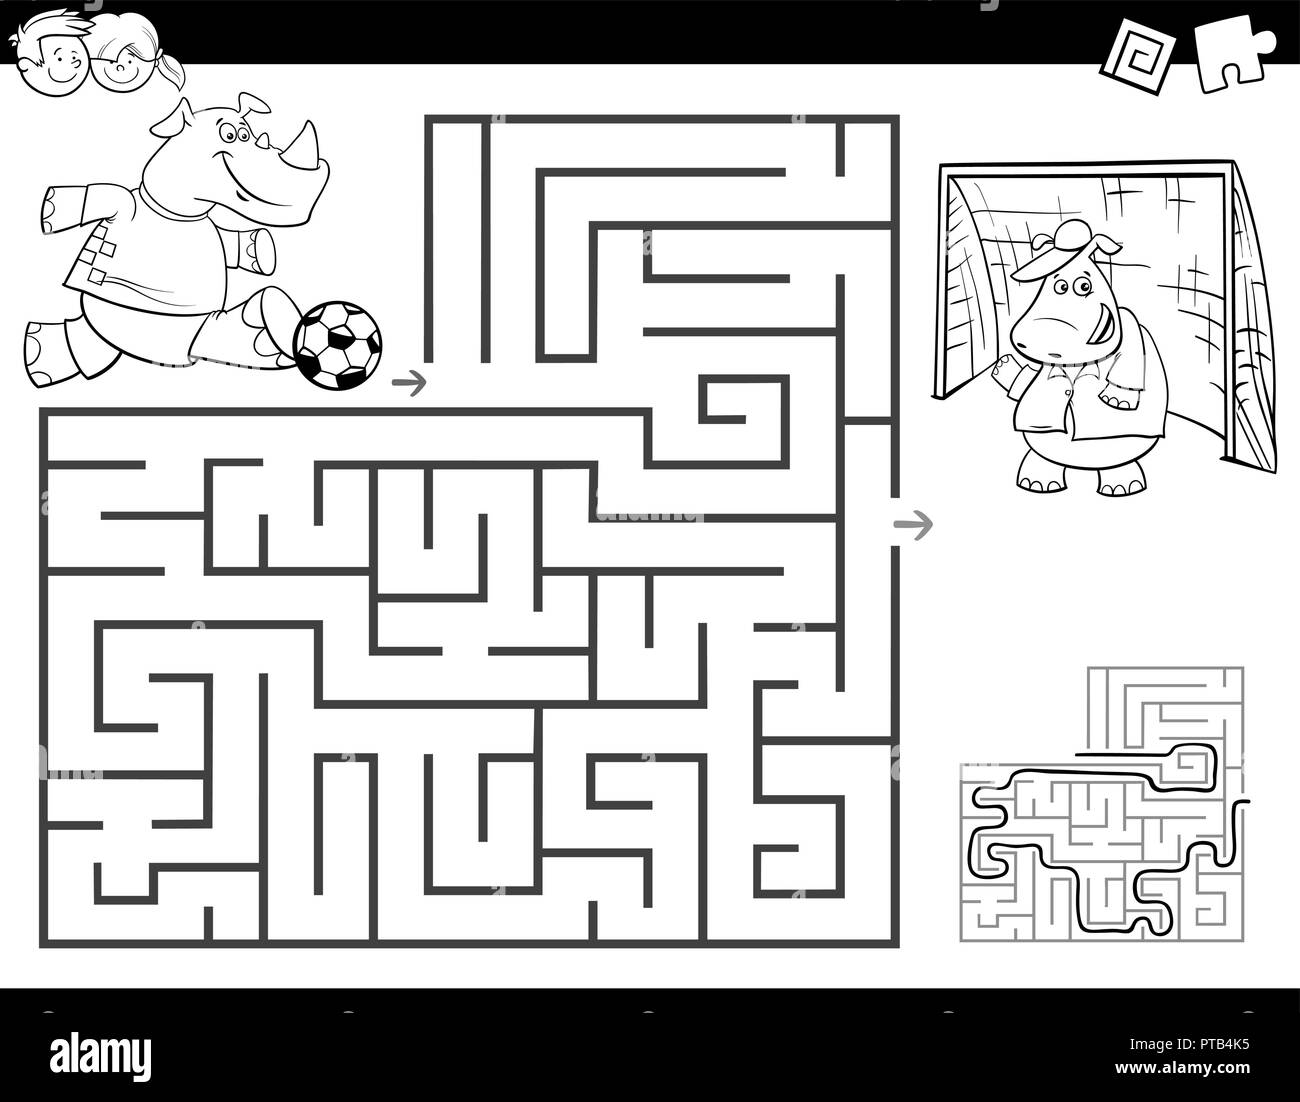 Bianco e Nero Cartoon illustrazione del labirinto di istruzione o attività a labirinto gioco per bambini con Rhino che giocano a calcio libro da colorare Illustrazione Vettoriale